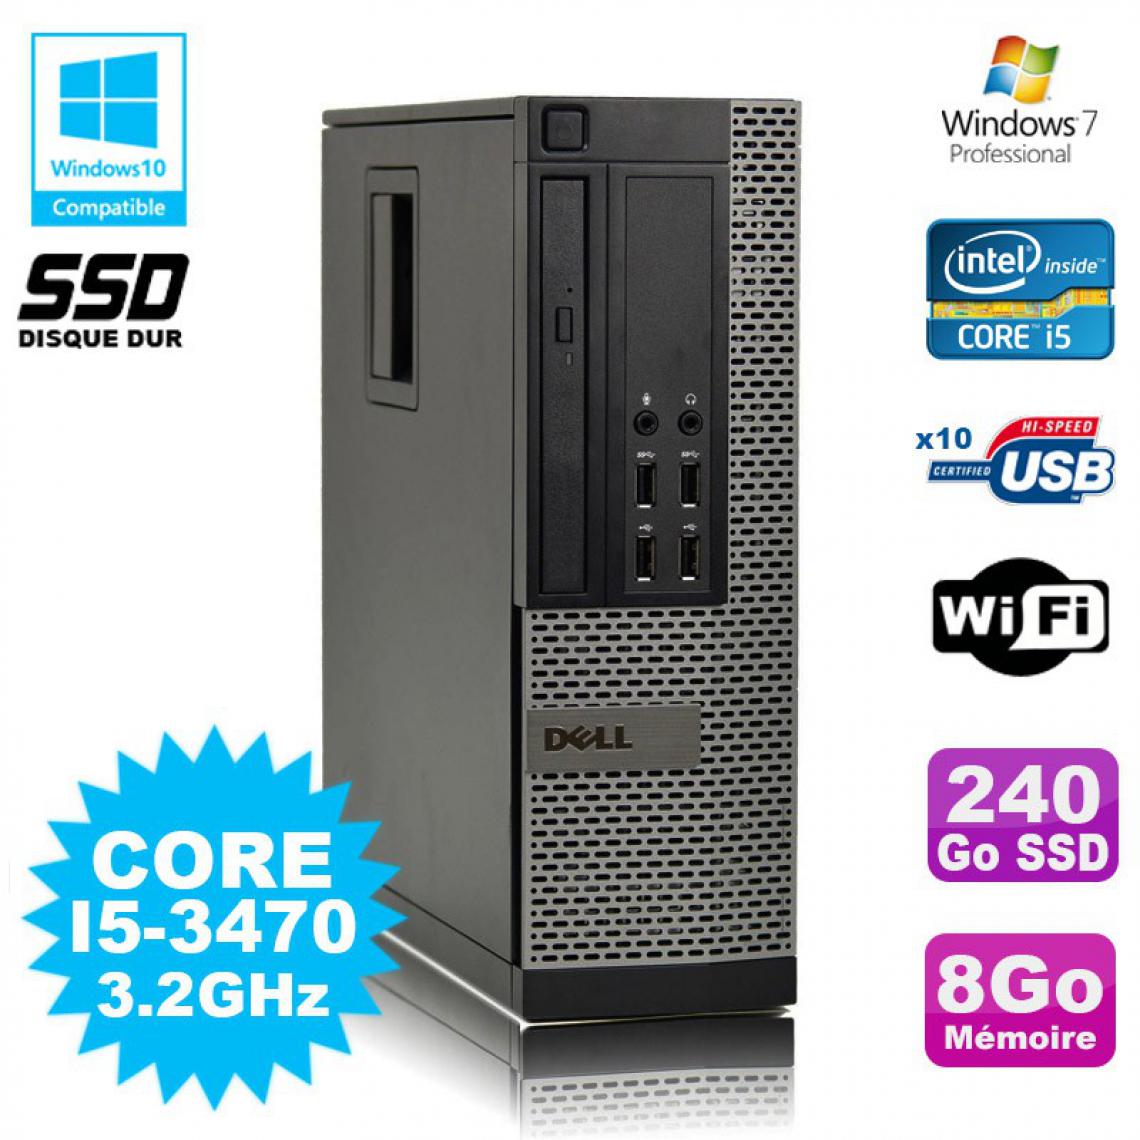 Dell - PC DELL Optiplex 790 SFF Core I5-3470 3.2Ghz 8Go Disque 240Go SSD WIFI W7 Pro - PC Fixe